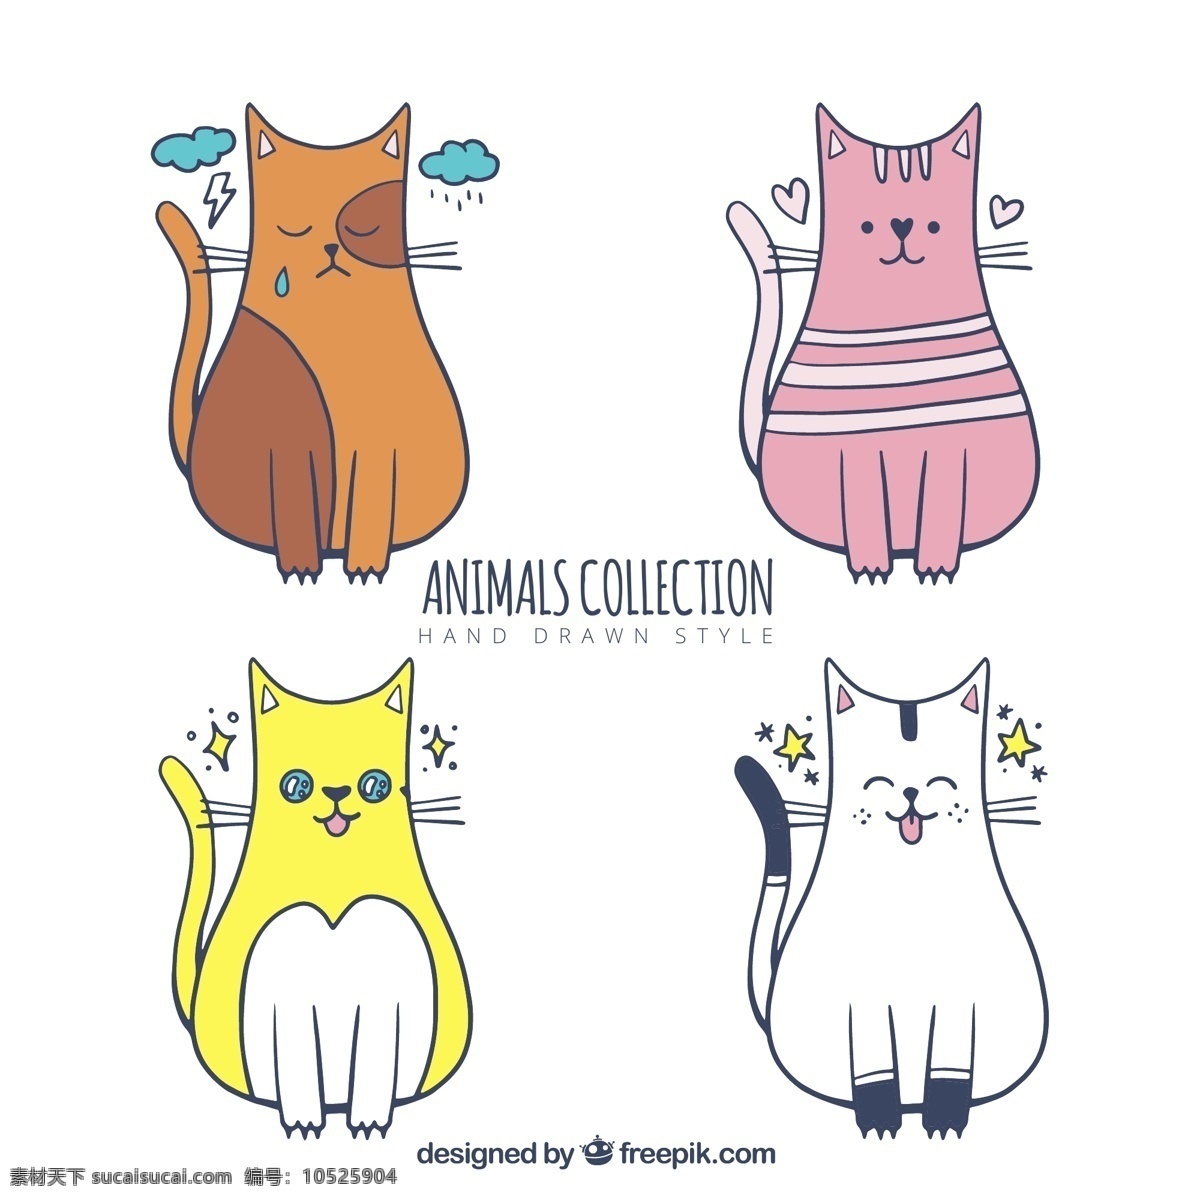 组 各种 颜色 可爱 猫咪 表情 包 卡通 卡哇伊 矢量素材 动物 小动物 创意设计 简约 创意 元素 生物元素 动物元素